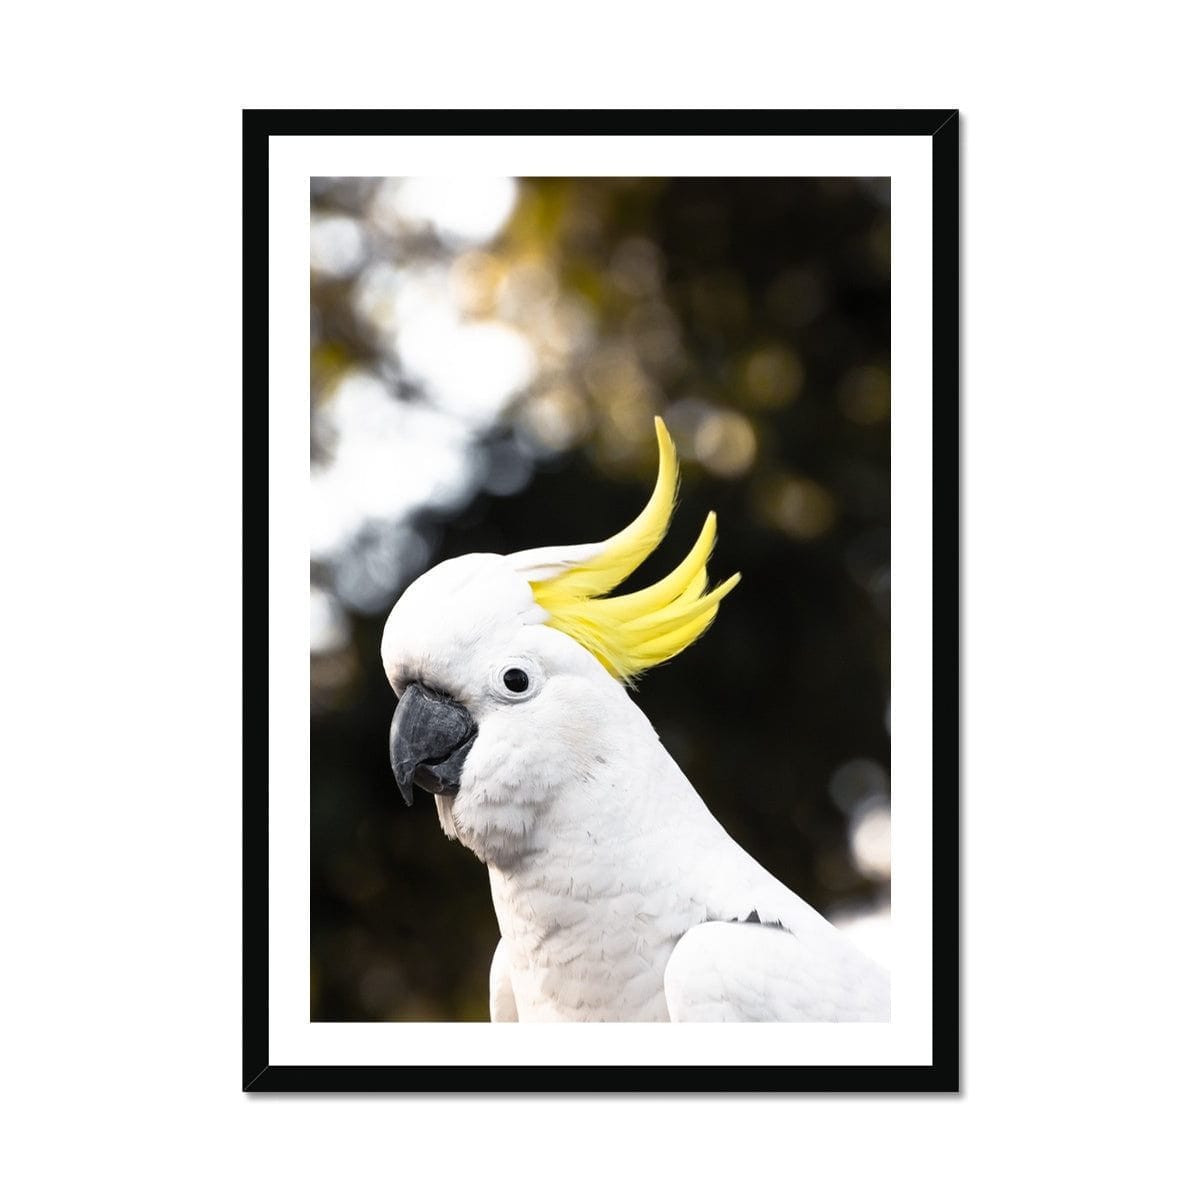 Adam Davies Framed A4 Portrait / Black Frame Sulphur-crested Cockatoo Print